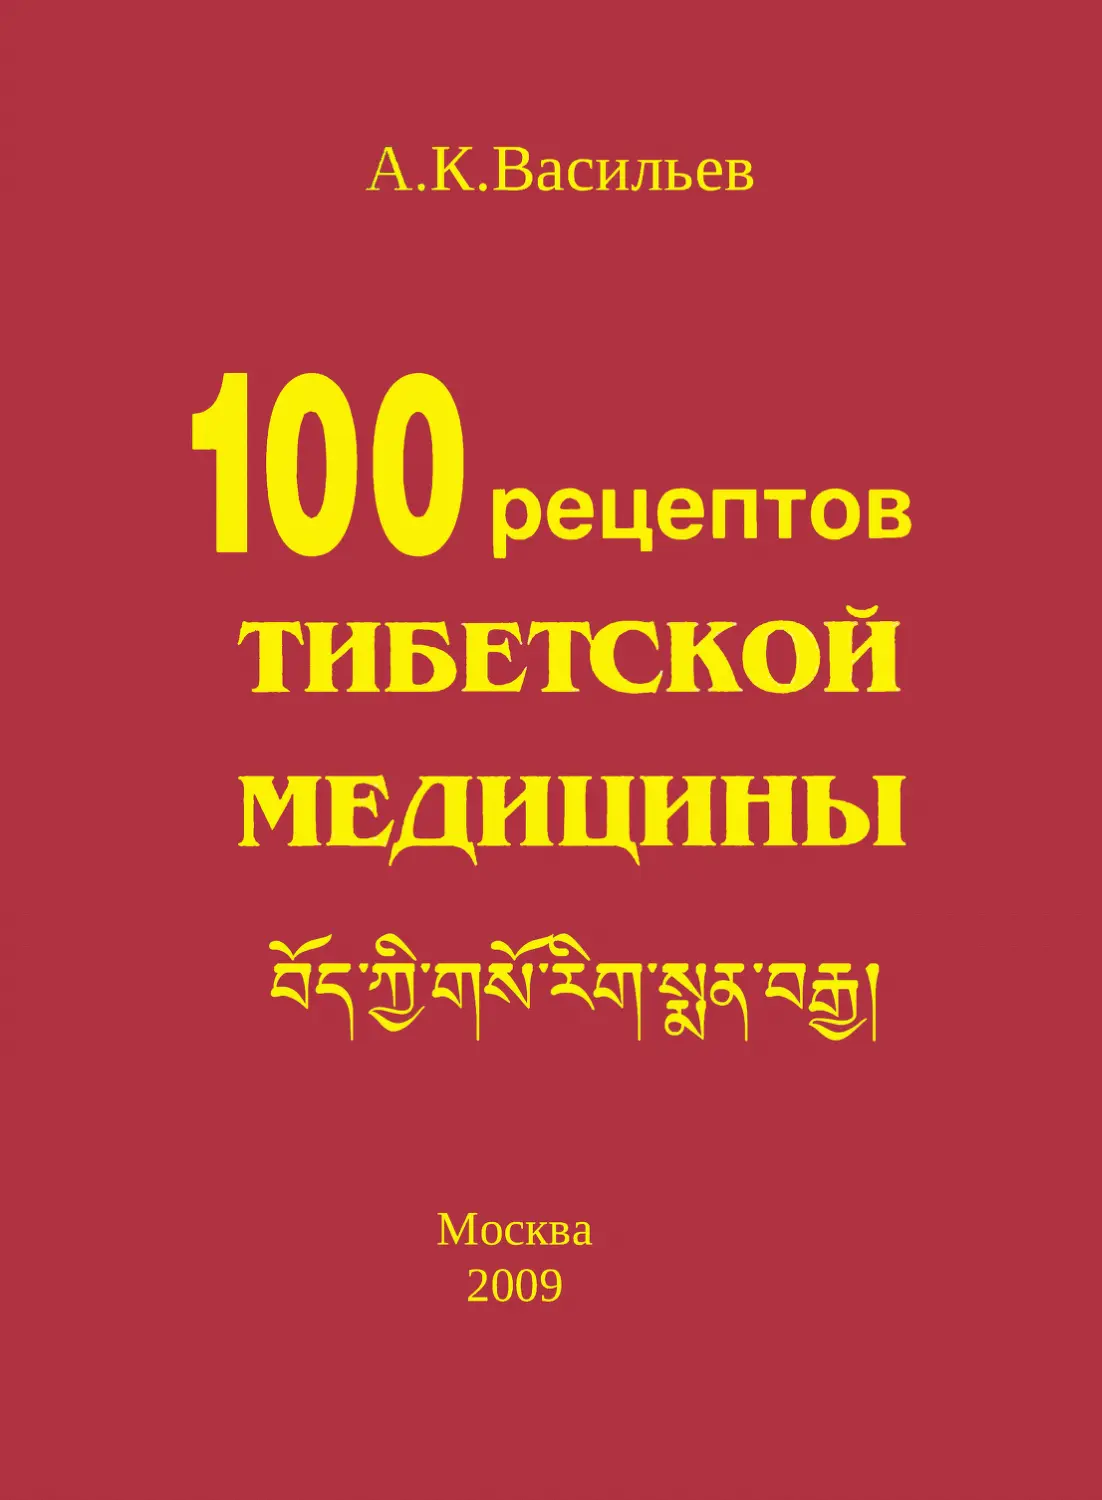 Сто рецептов тибетской медицины. Васильев А.К. М.: Прогресс-Традиция. 2009 г. 150 с.